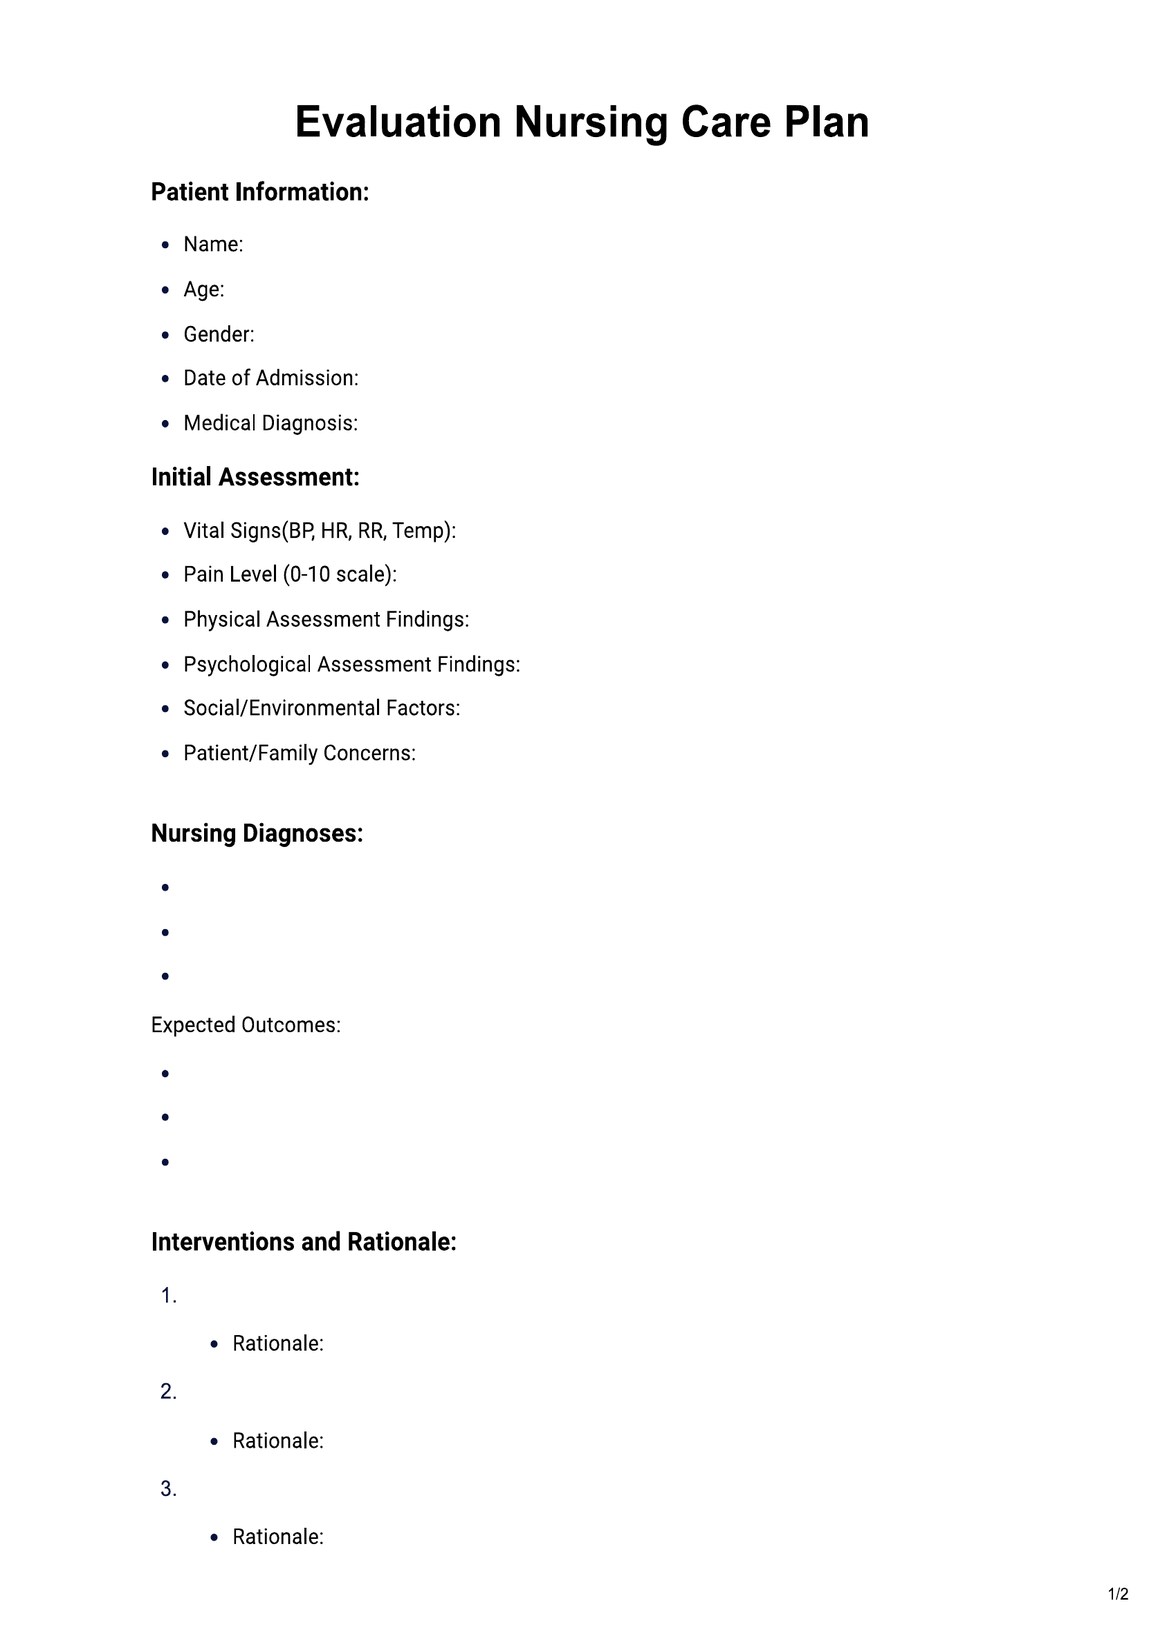 Evaluation Nursing Care Plan PDF Example